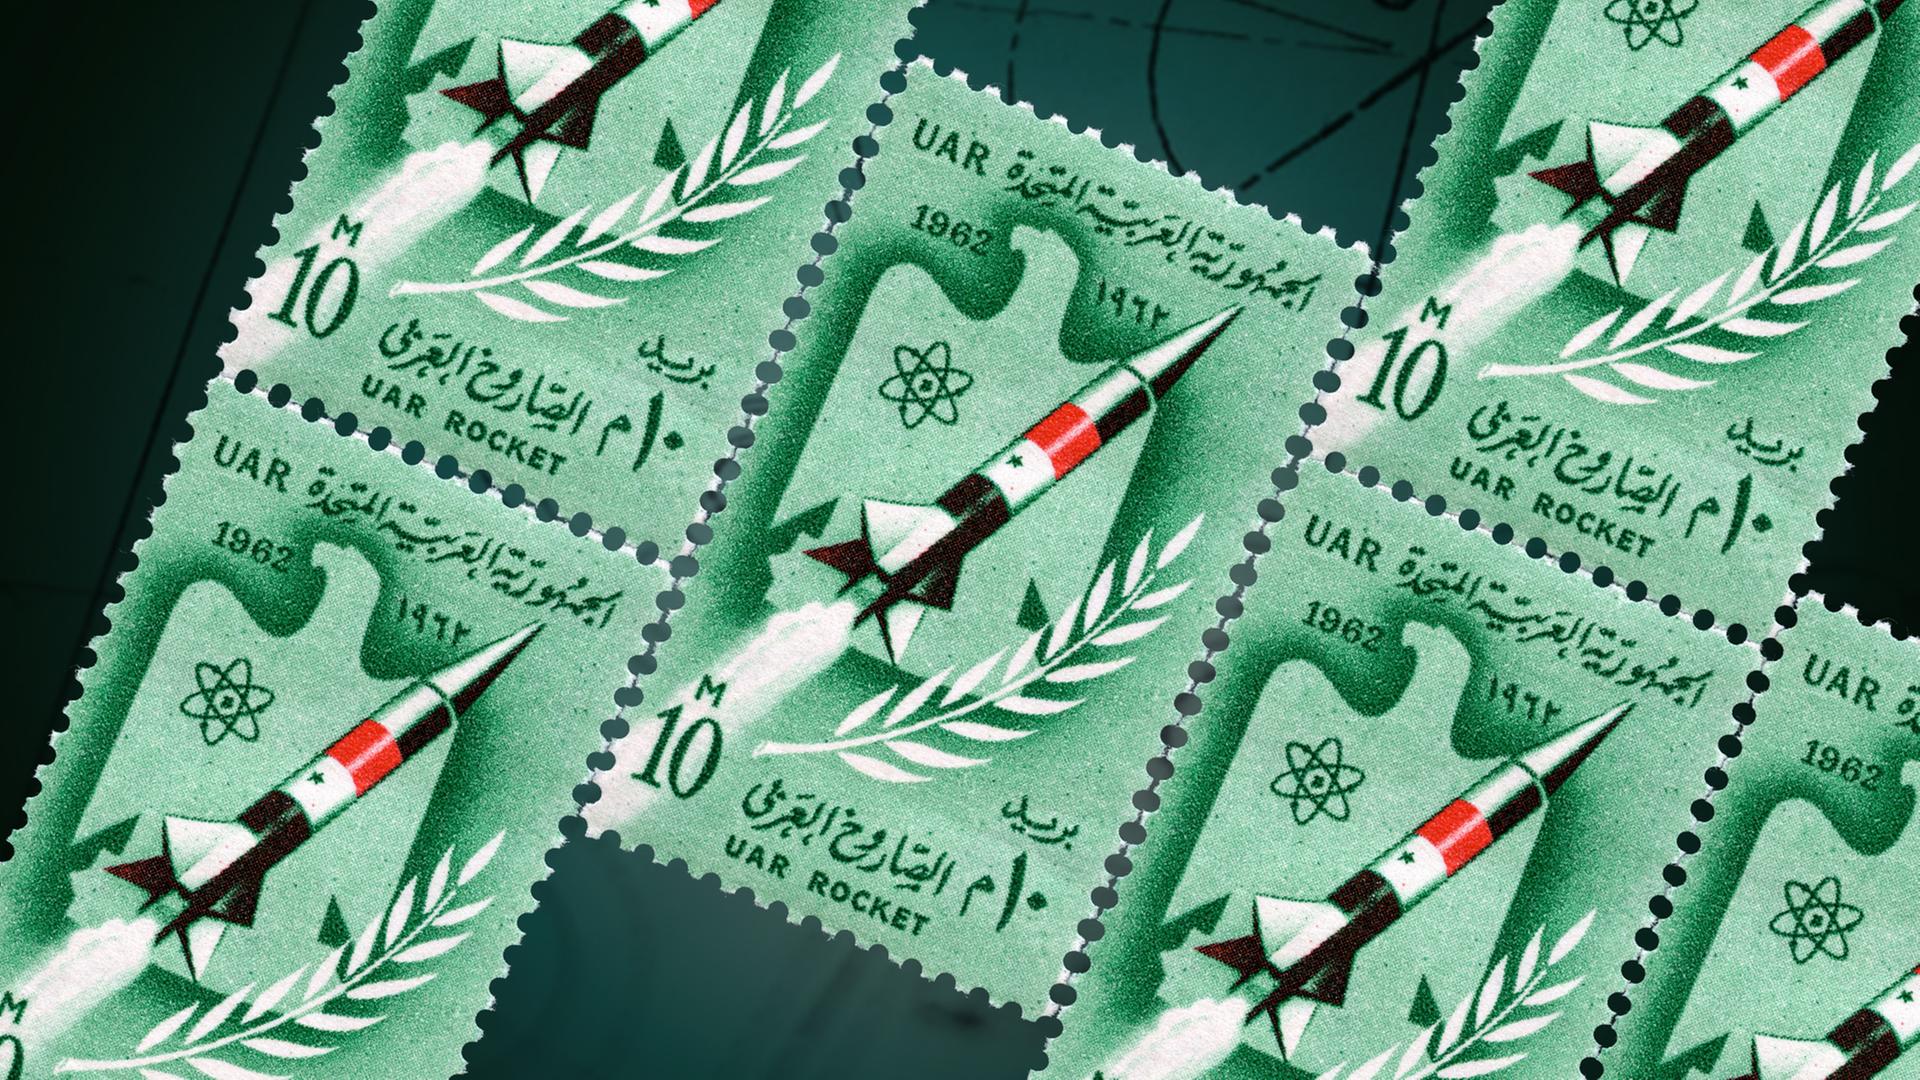 Briefmarken mit Raketen darauf auf grünem Grund